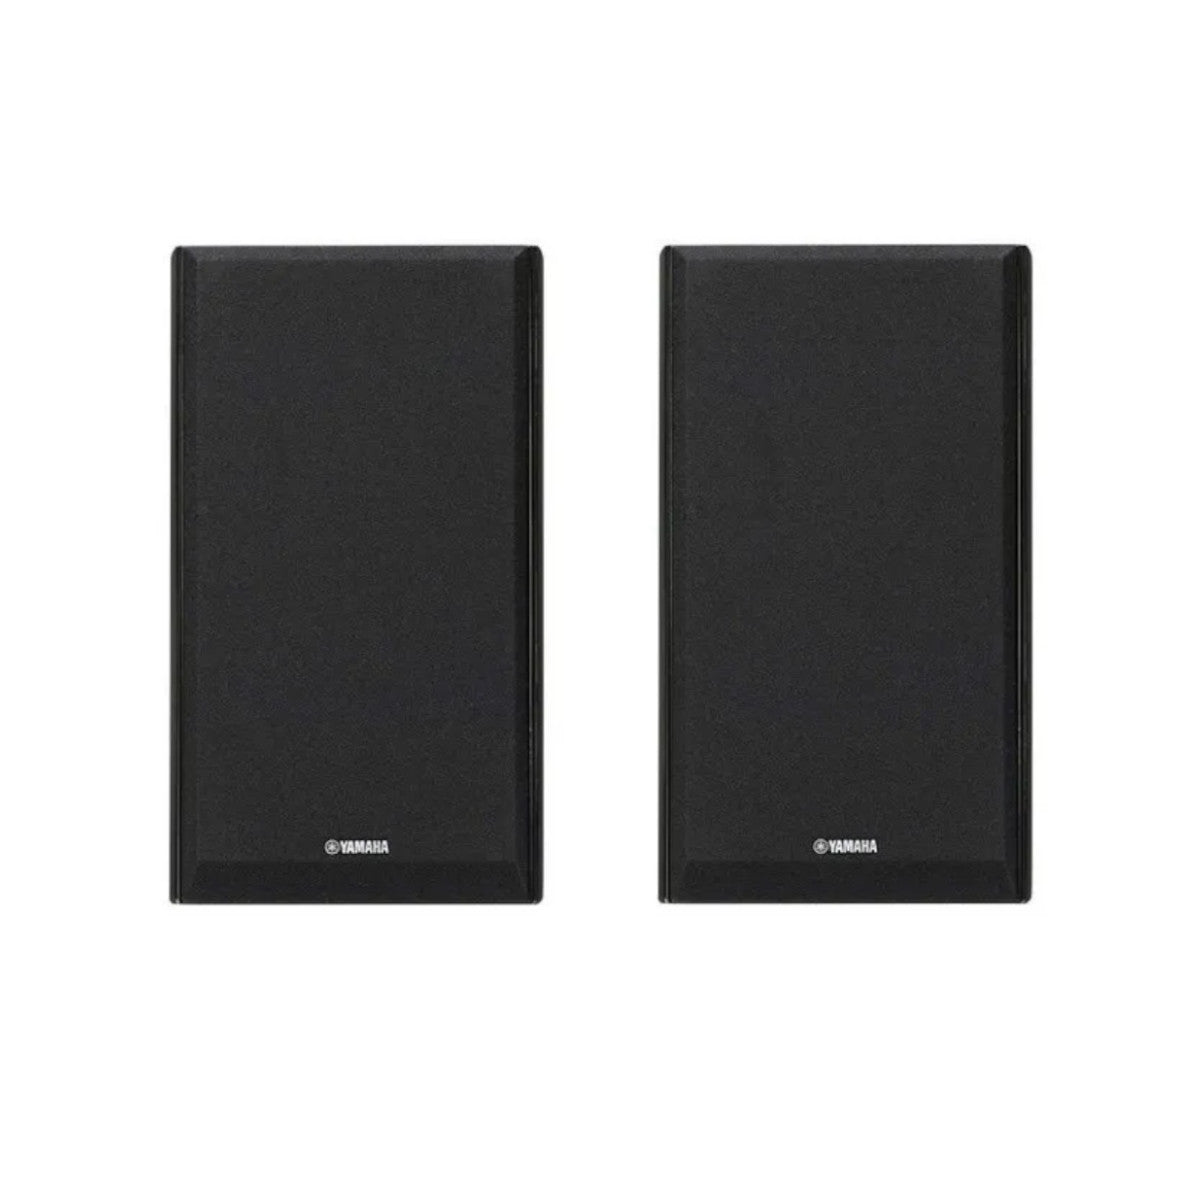 Yamaha NS-333 2-Way Bookshelf Speaker (Pair)